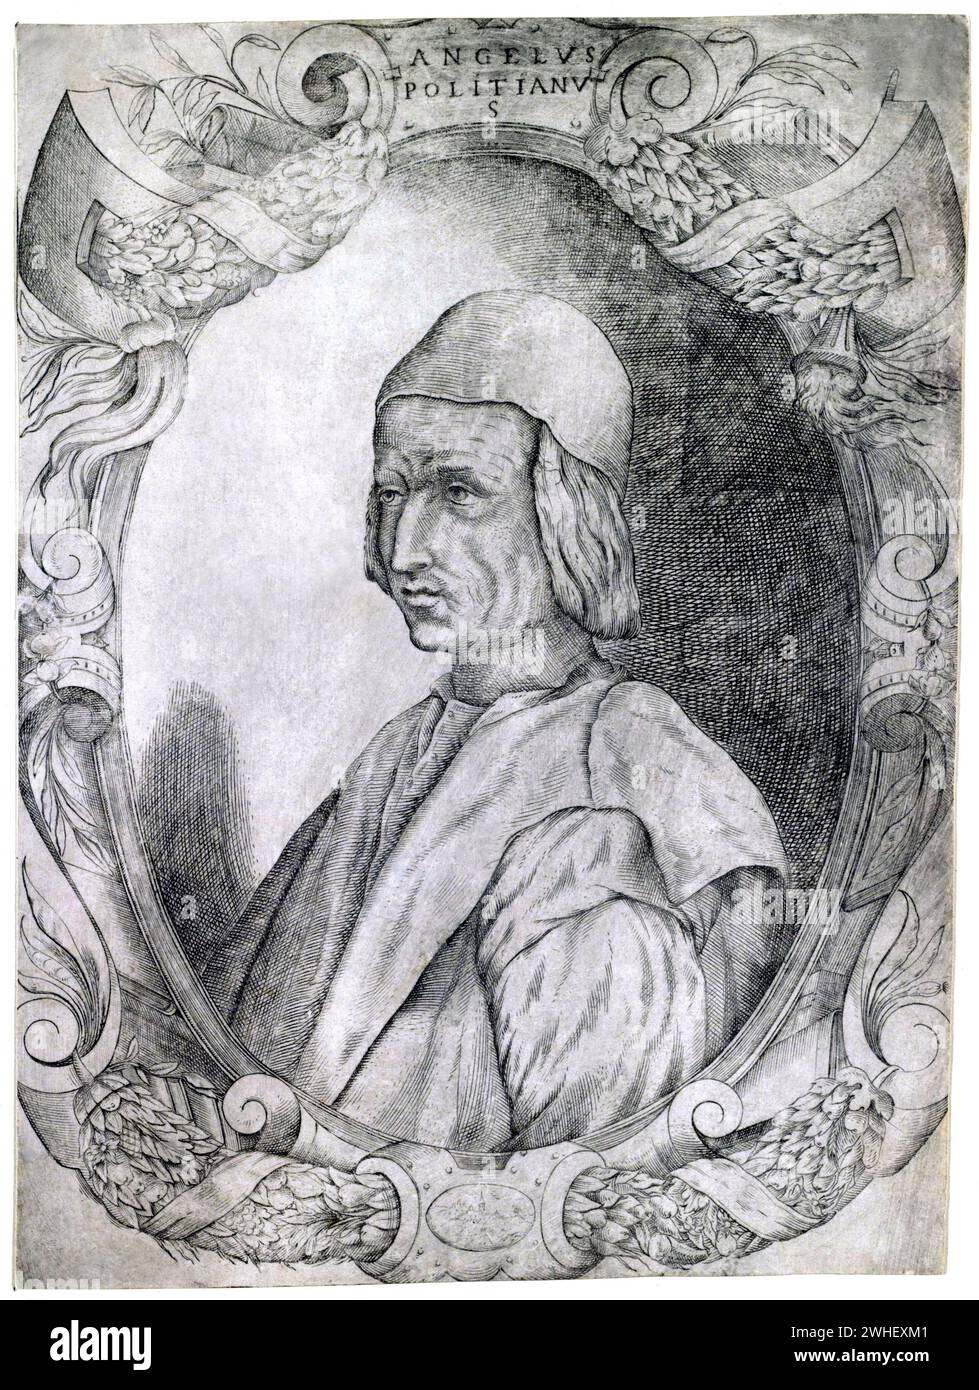 1490 c, ITALIEN : der italienische Renaissance-Philosoph, Dichter und Humanist ANGELO POLIZIANO ( Agnolo Ambrogini , 1454–1494 ). Porträt von Fabio Licinio ( 1531 - 1565 ). - FILOSOFIA - FILOSOFO - RINASCIMENTO - RITRATTO - ARTE - KUNST - GRAVUR - INCISIONE - STAMPA - PHILOSOPHIE - LETTERATURA - LITERATUR - LETTERATO - SCRITTORE - SCHRIFTSTELLER - UMANISTA - RINASCIMENTO - RENAISSANCE - POETA - POESIE - GESCHICHTE - FOTO STORICHE - ARCHIVIO GBB Stockfoto